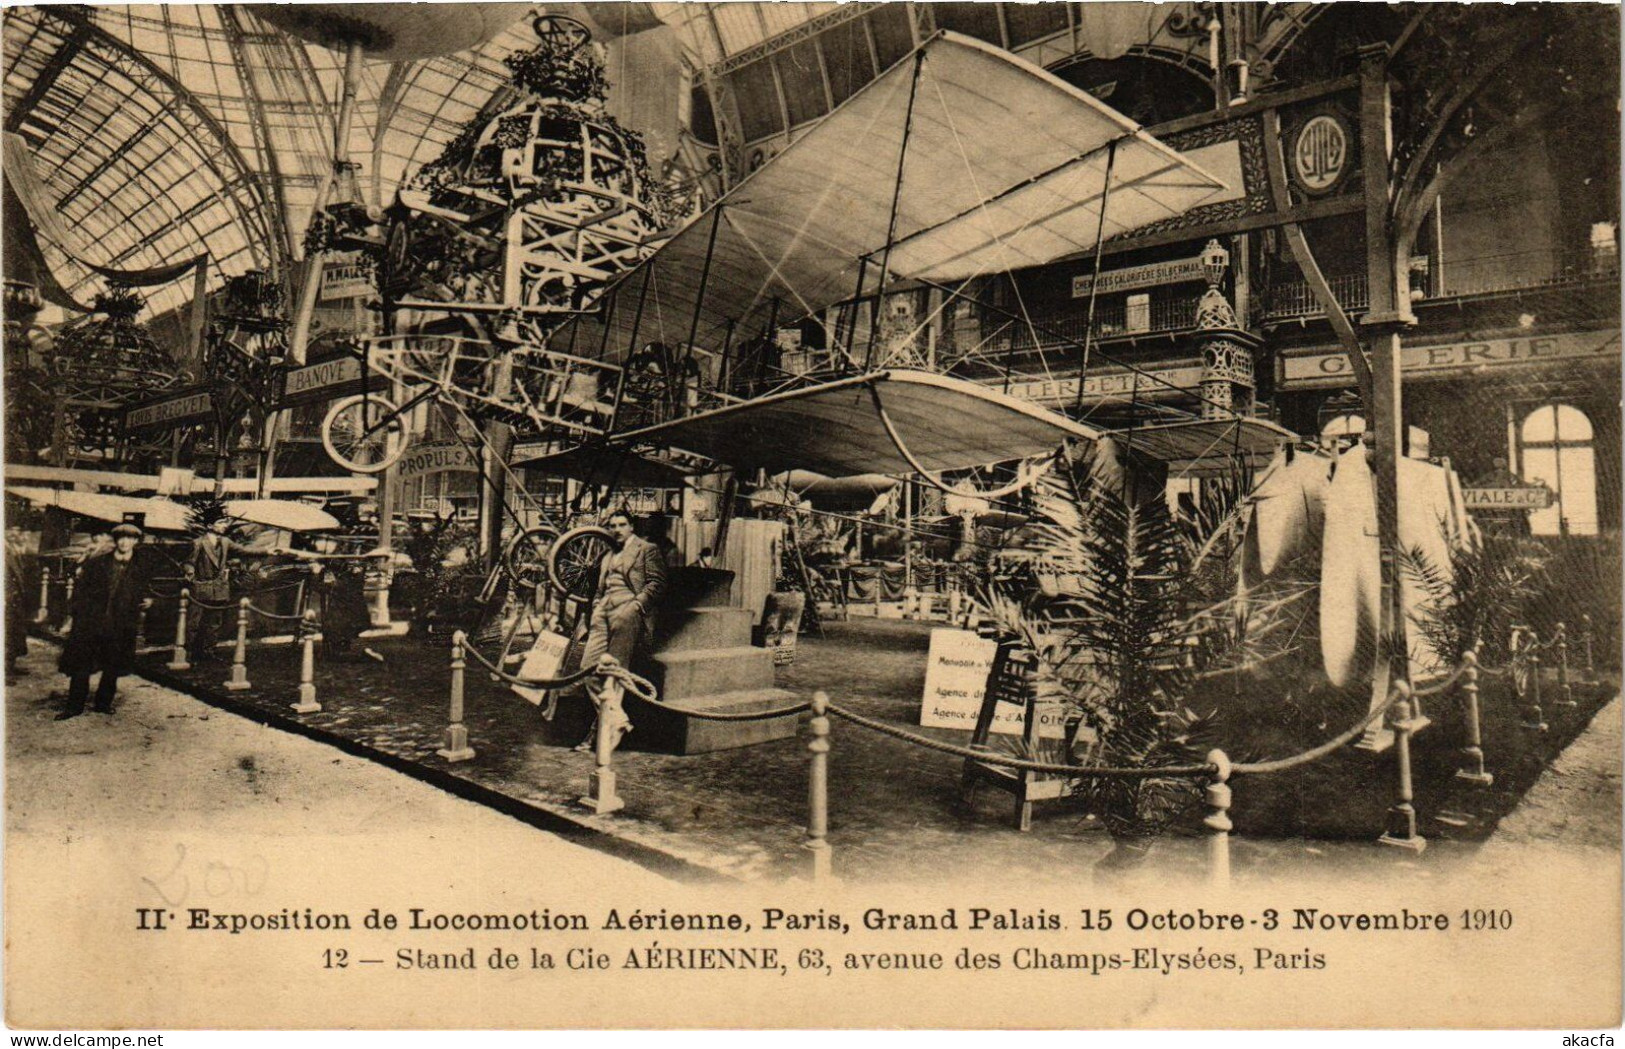 PC AVIATION EXPO DE LOCOMOTION AERIENNE 1910 PARIS STAND CIE AÉRIENNE (a53925) - Riunioni